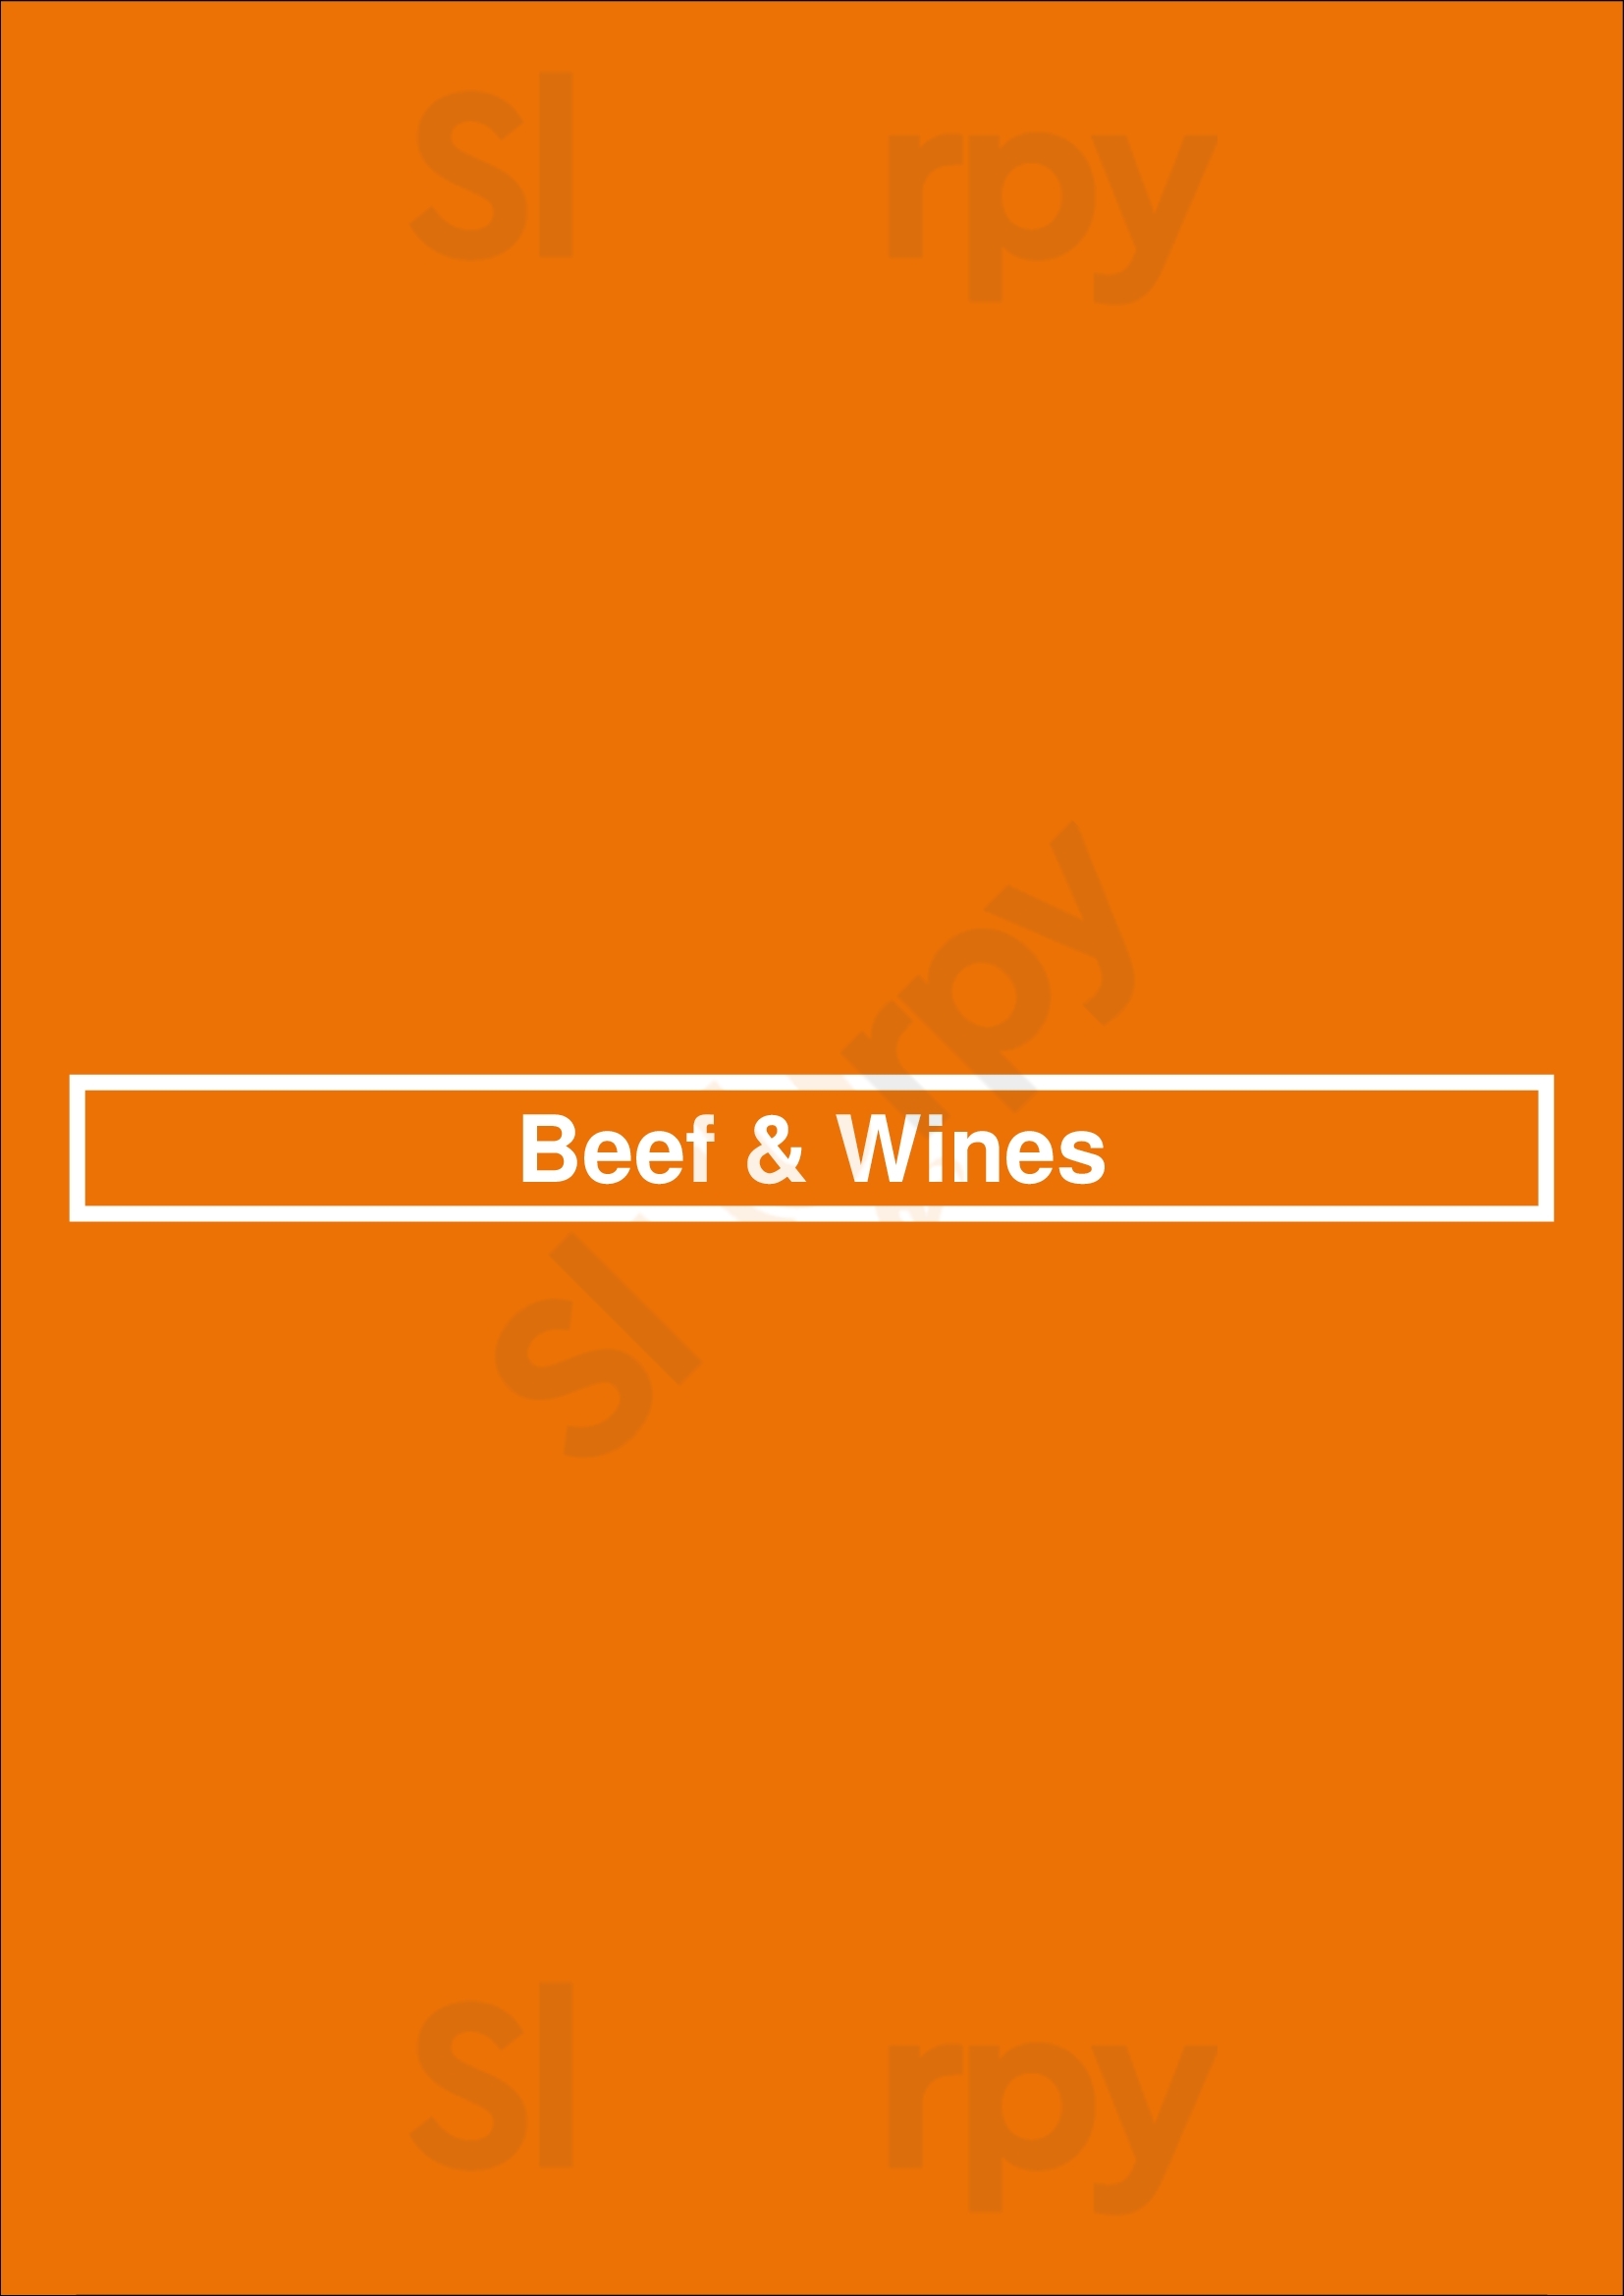 Beef & Wines Funchal Menu - 1